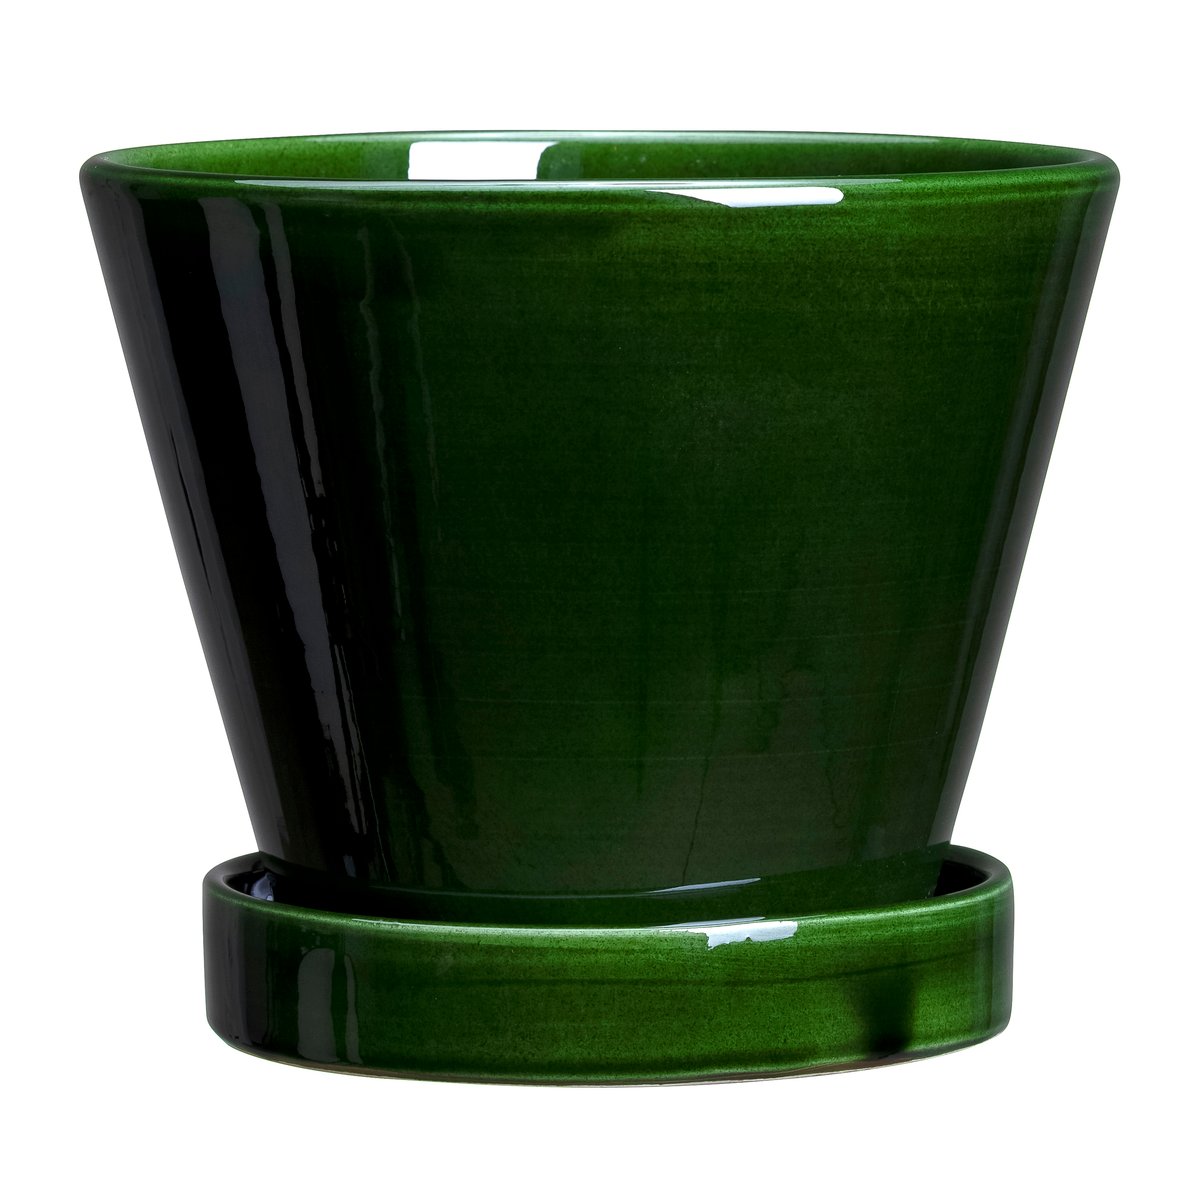 Bergs Potter Julie krukke glaseret Ø19 cm Green emerald (0842142108400)